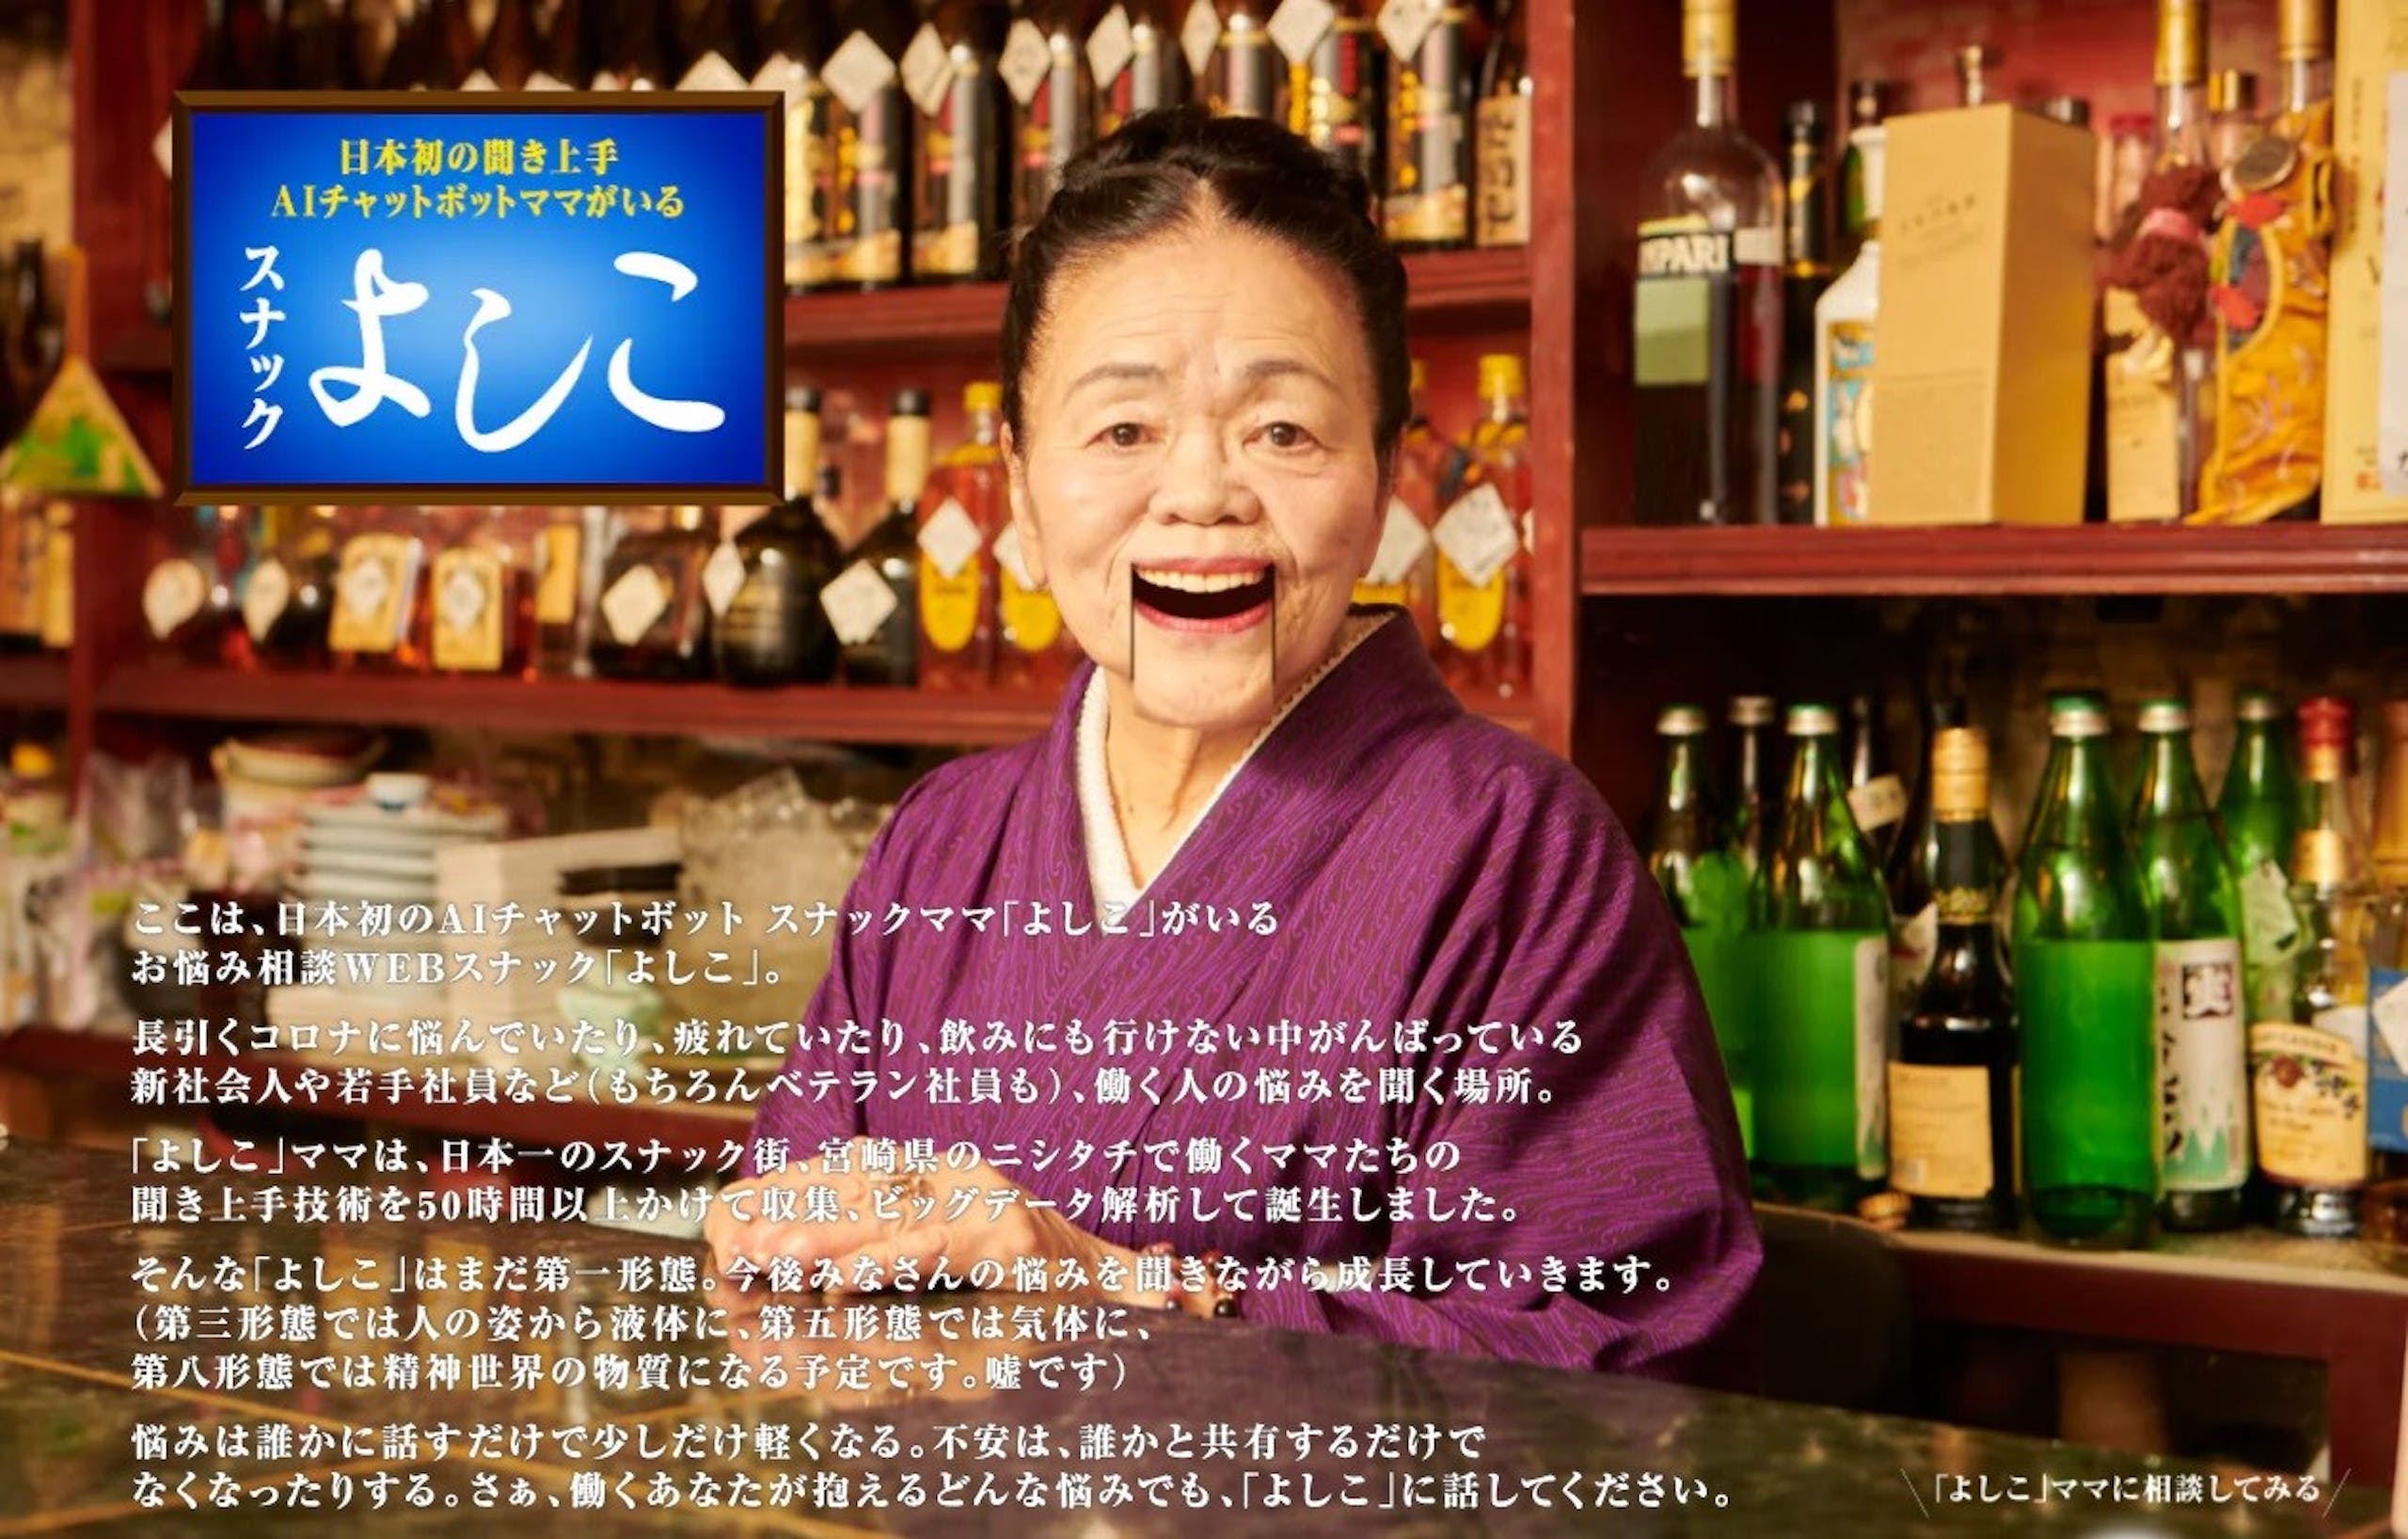 照片中提到了日本初の闘き上手、AIチャットボットママがいる、PARI，跟雷納姆女子學校有關，包含了蒸餾飲料、瓶店